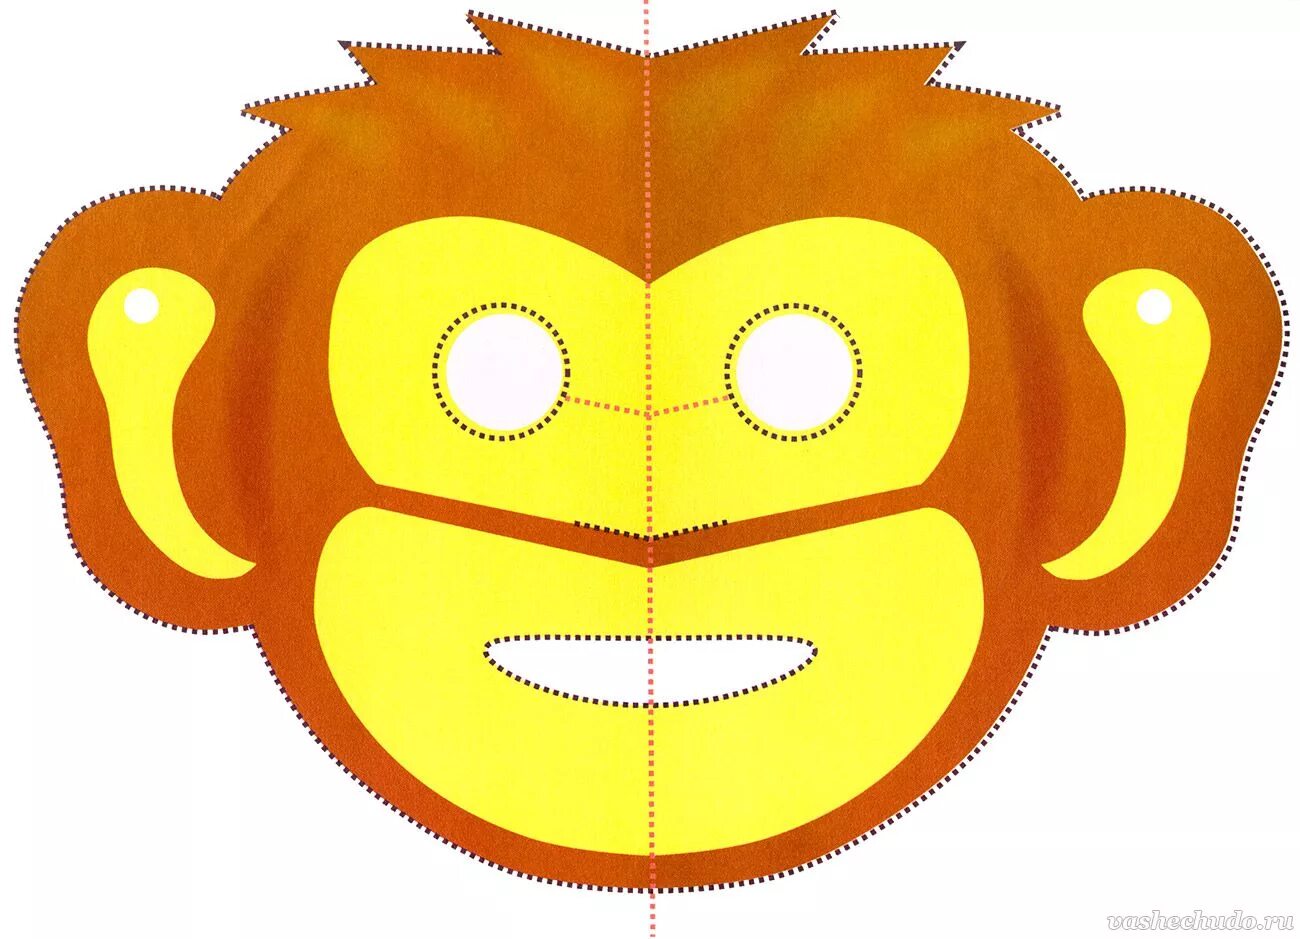 Маски на дне рождении. Бумажные маски. Новогодняя маска обезьяны. Маска из картона. Маска из бумаги обезьянка.